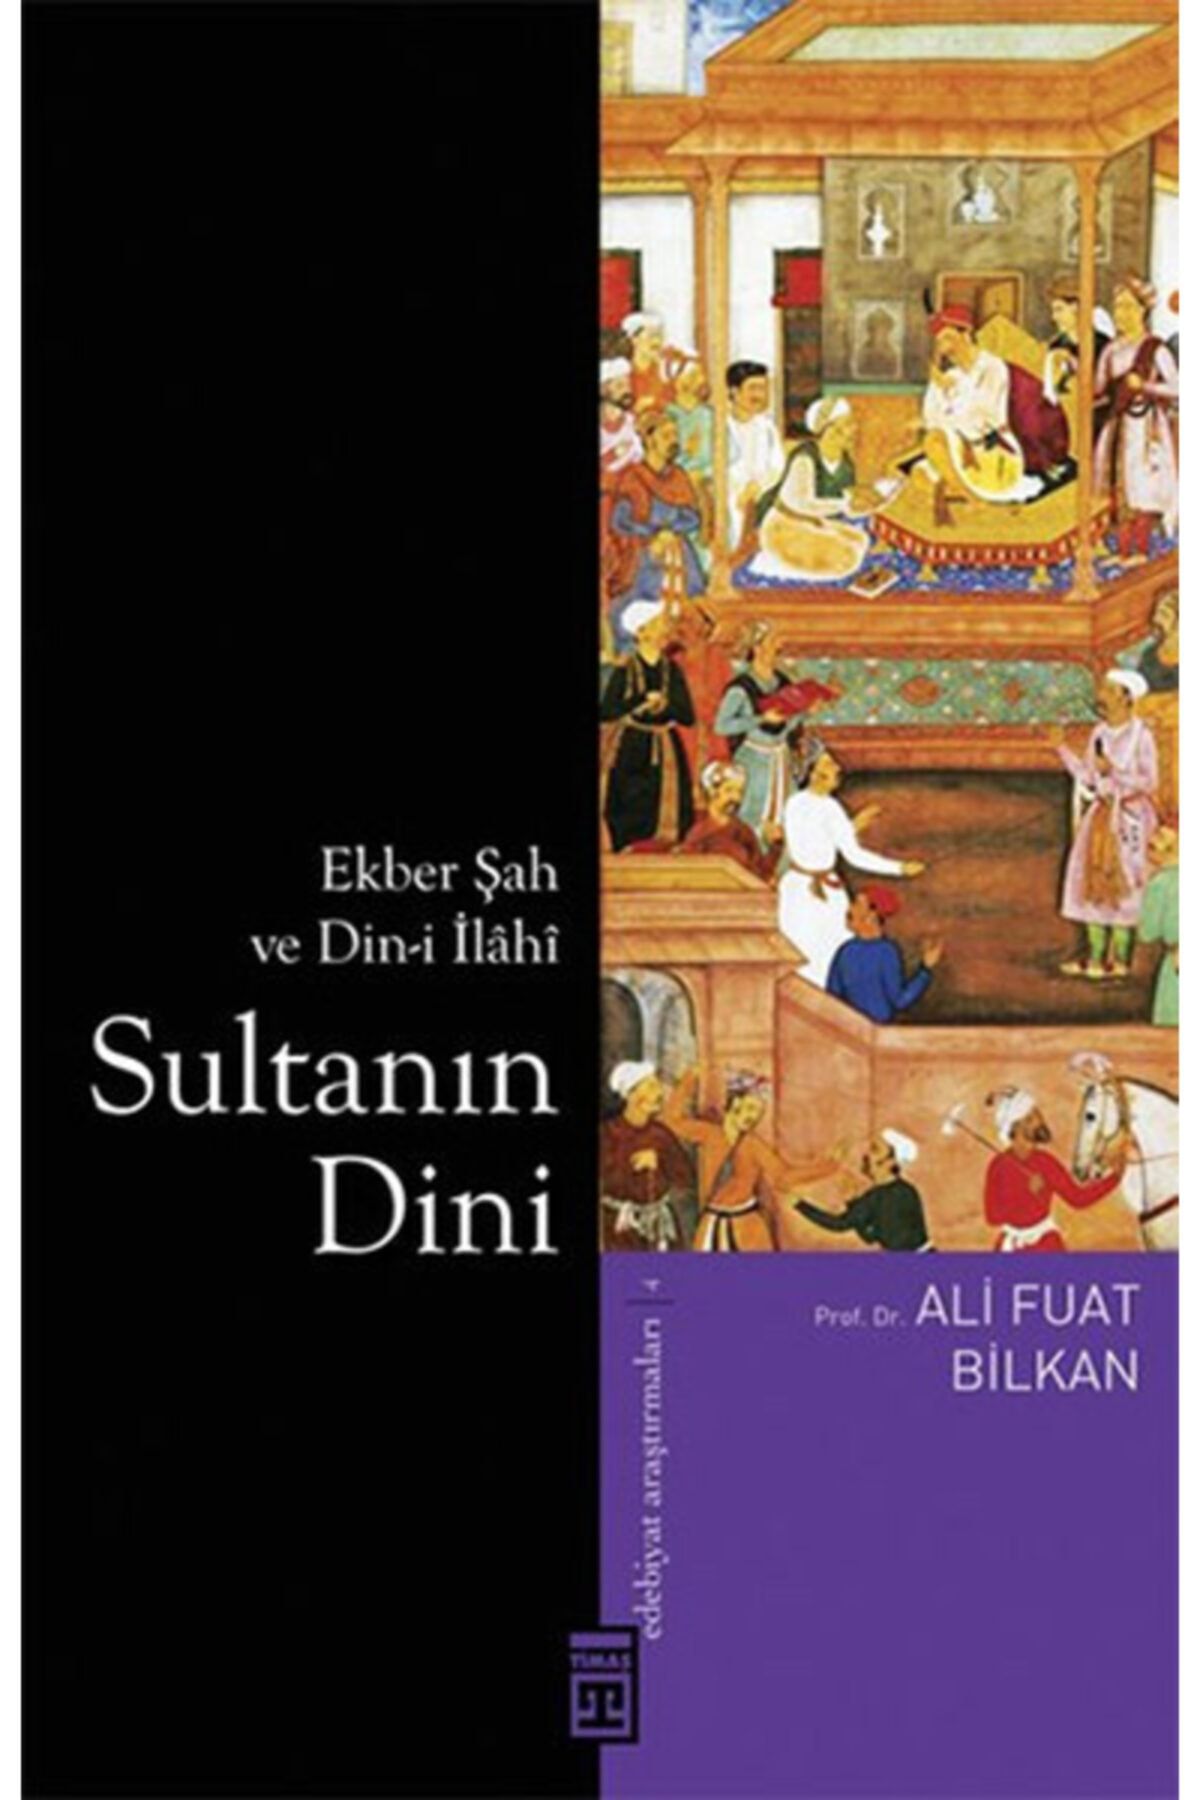 Timaş Yayınları Sultanın Dini & Ekber Şah Ve Din-i Ilahi